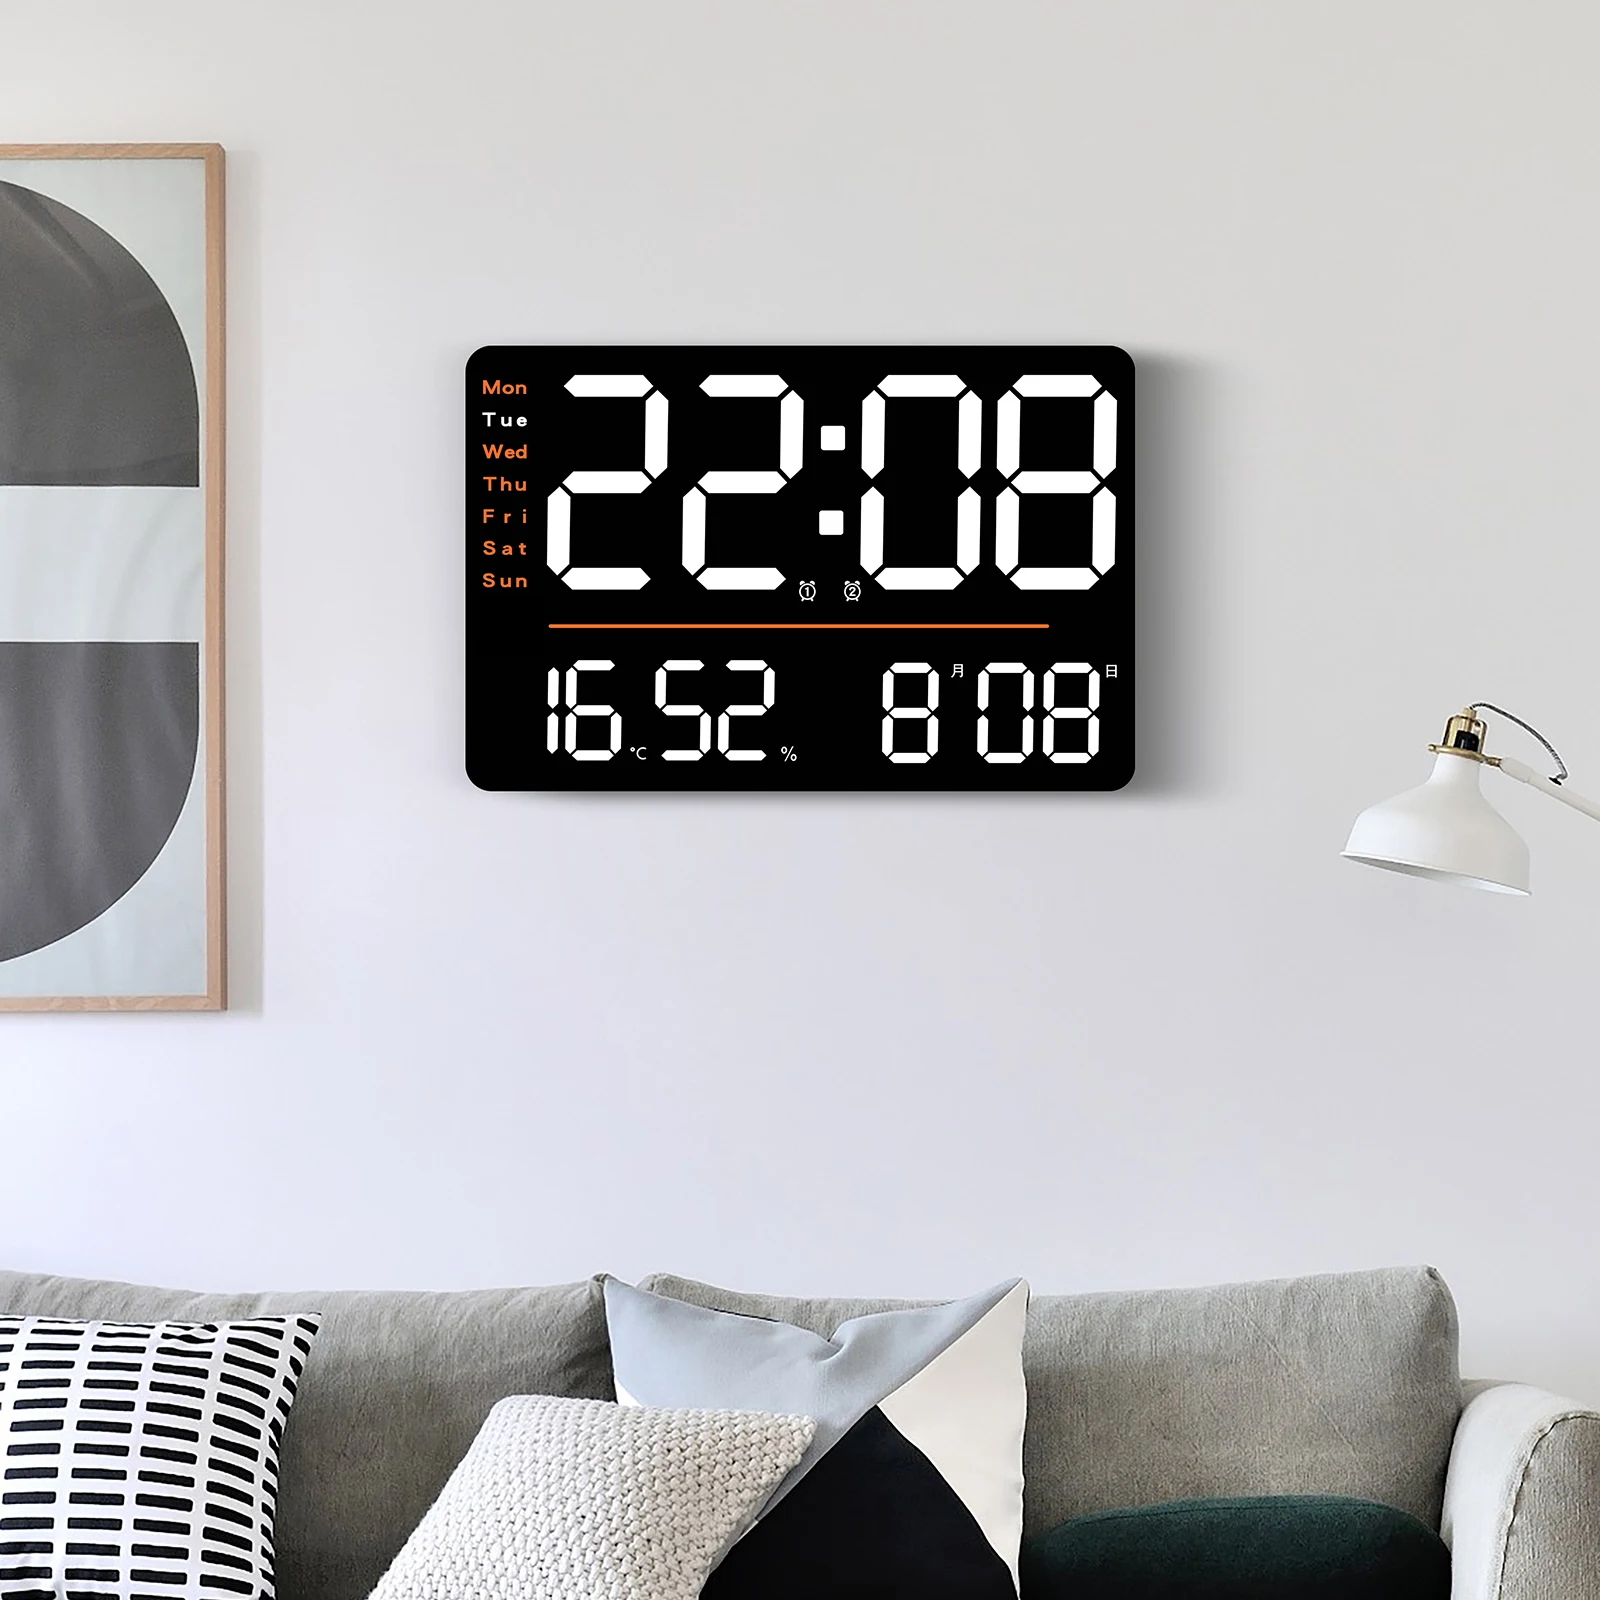 

Светодиодные цифровые настенные часы с дистанционным управлением Регулируемая яркость Температура Влажность подключаемый к использованию электронный будильник домашний декор